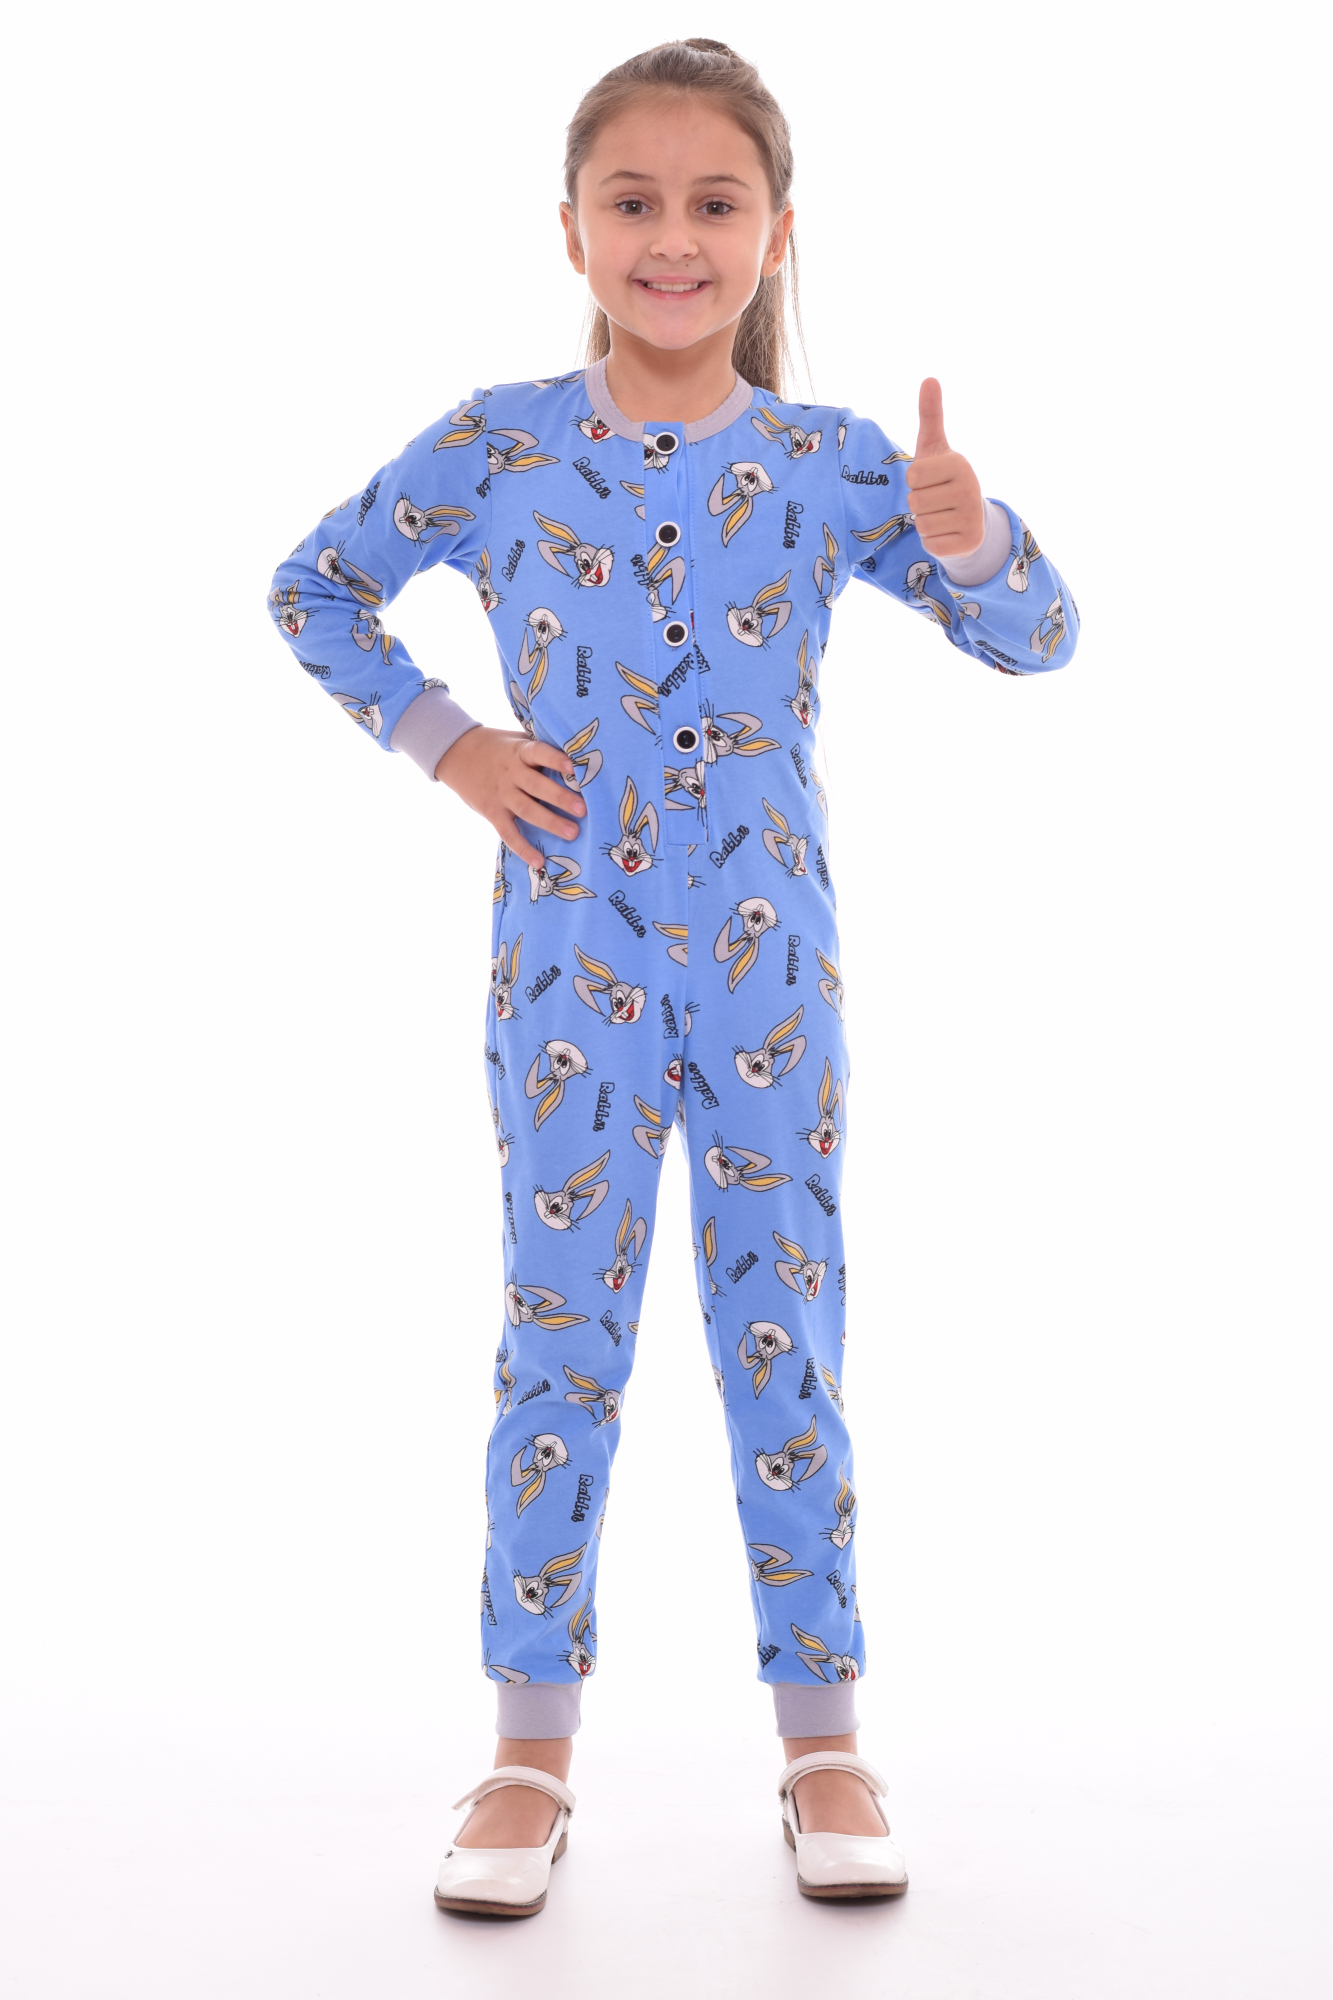 Валберис пижама для девочек. Пижама для девочки. Детские пижамы. Пижама-комбинезон детская. Дети в пижамах.